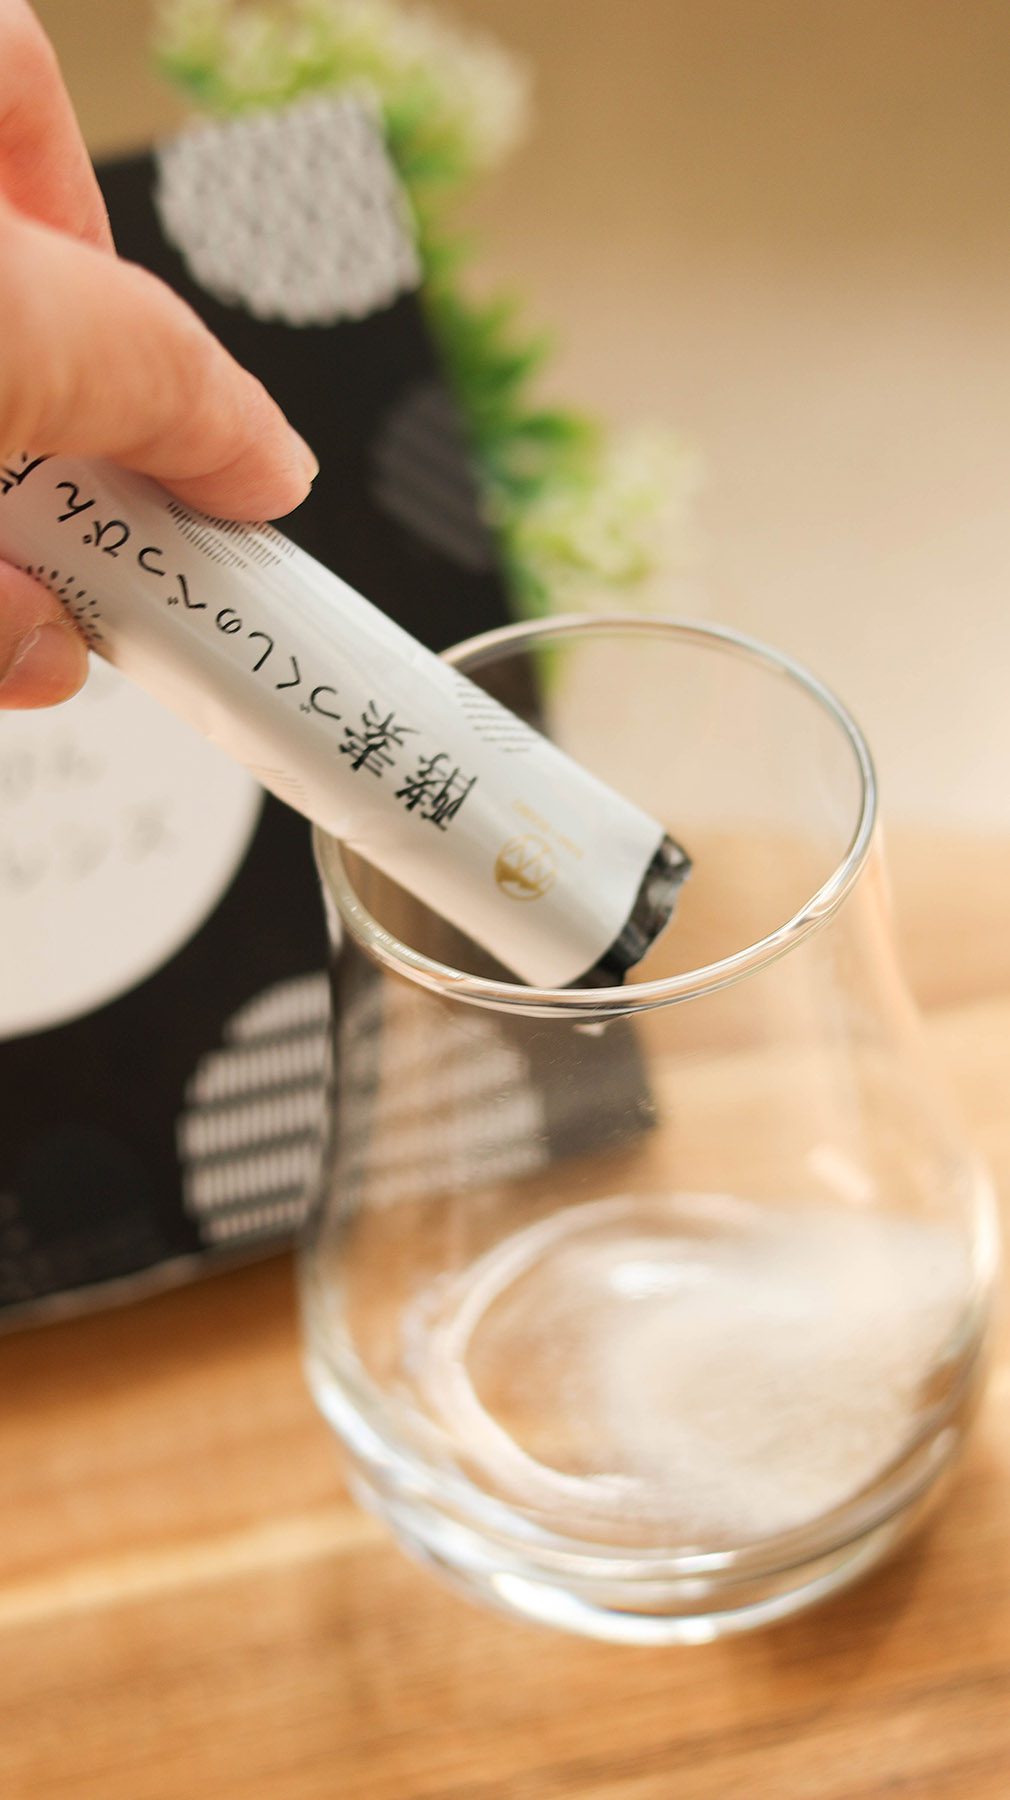 DIET-PREMIUM炭輕盈纖淨酵素粉／使用美人炭、來自日本正港日本製 @Rosa的秘密花園